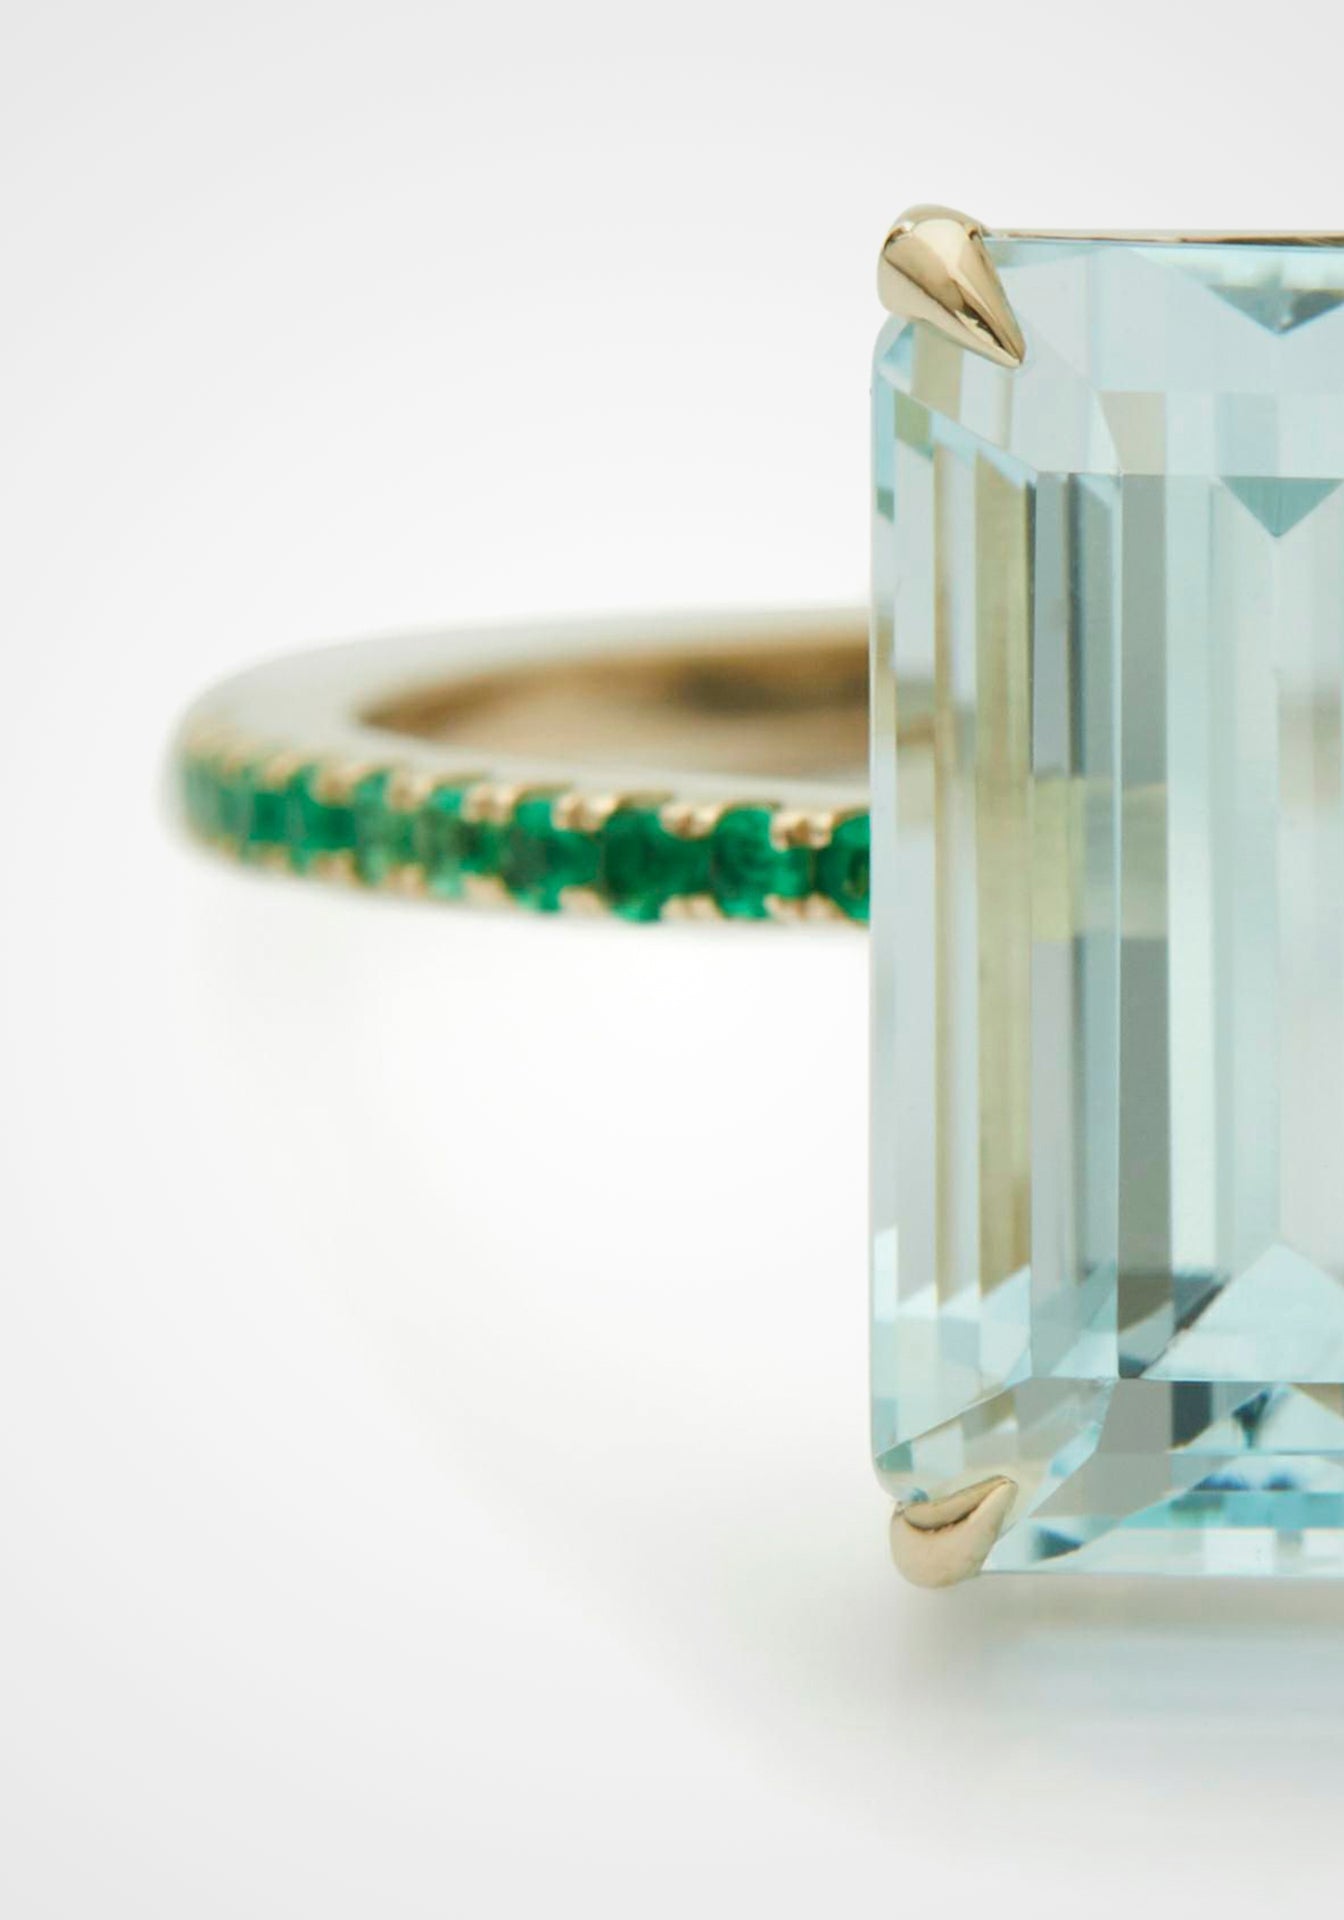 Spring, 18K Yellow Gold, Emerald + Aquamarine Ring